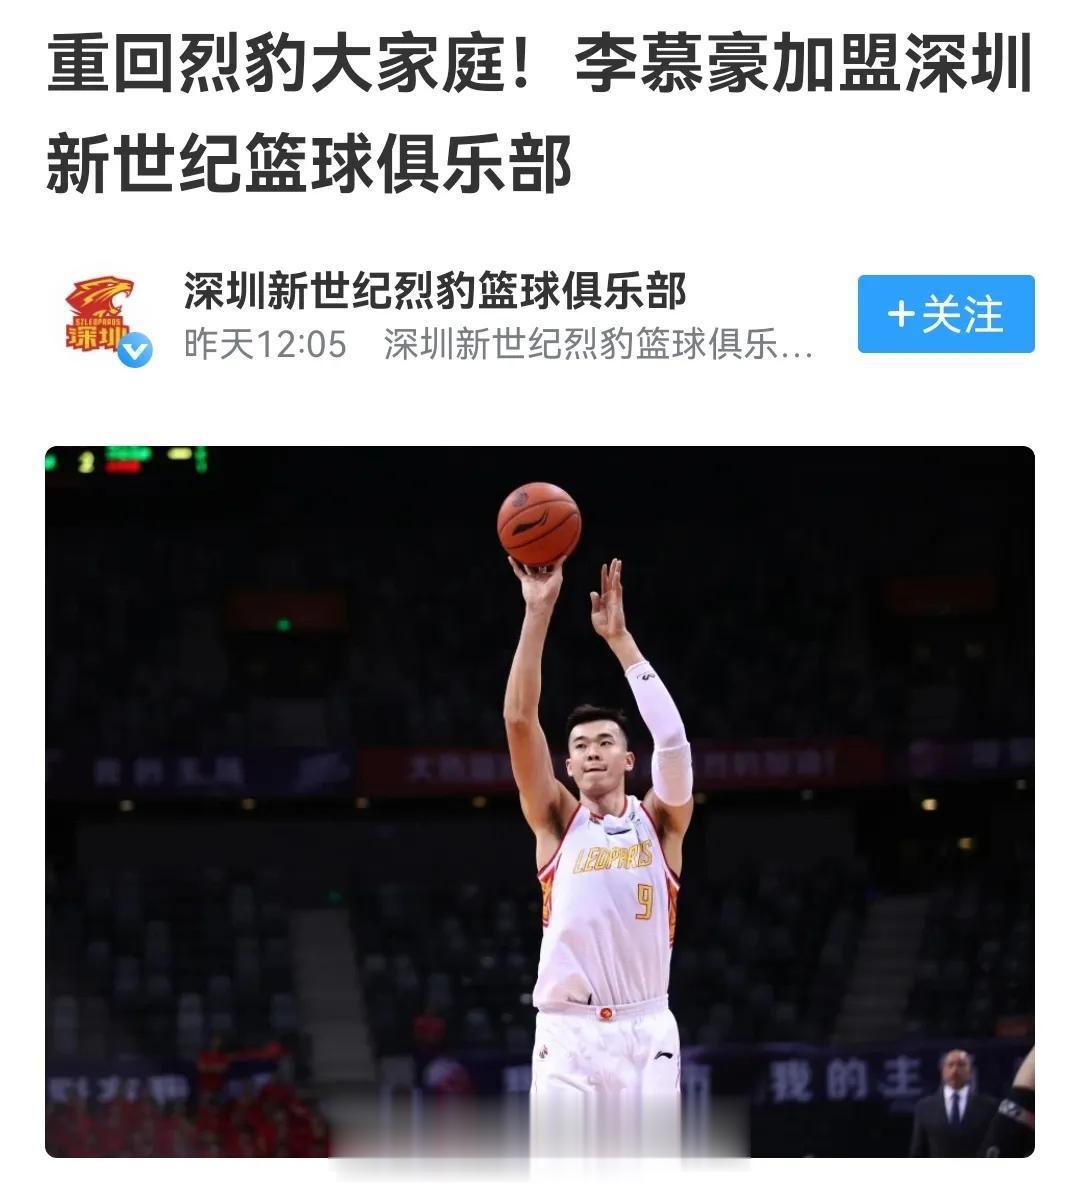 李慕豪回到深圳，范子铭险些被放弃，首钢三年操作很失败

首钢队去年换了主教练和总(3)